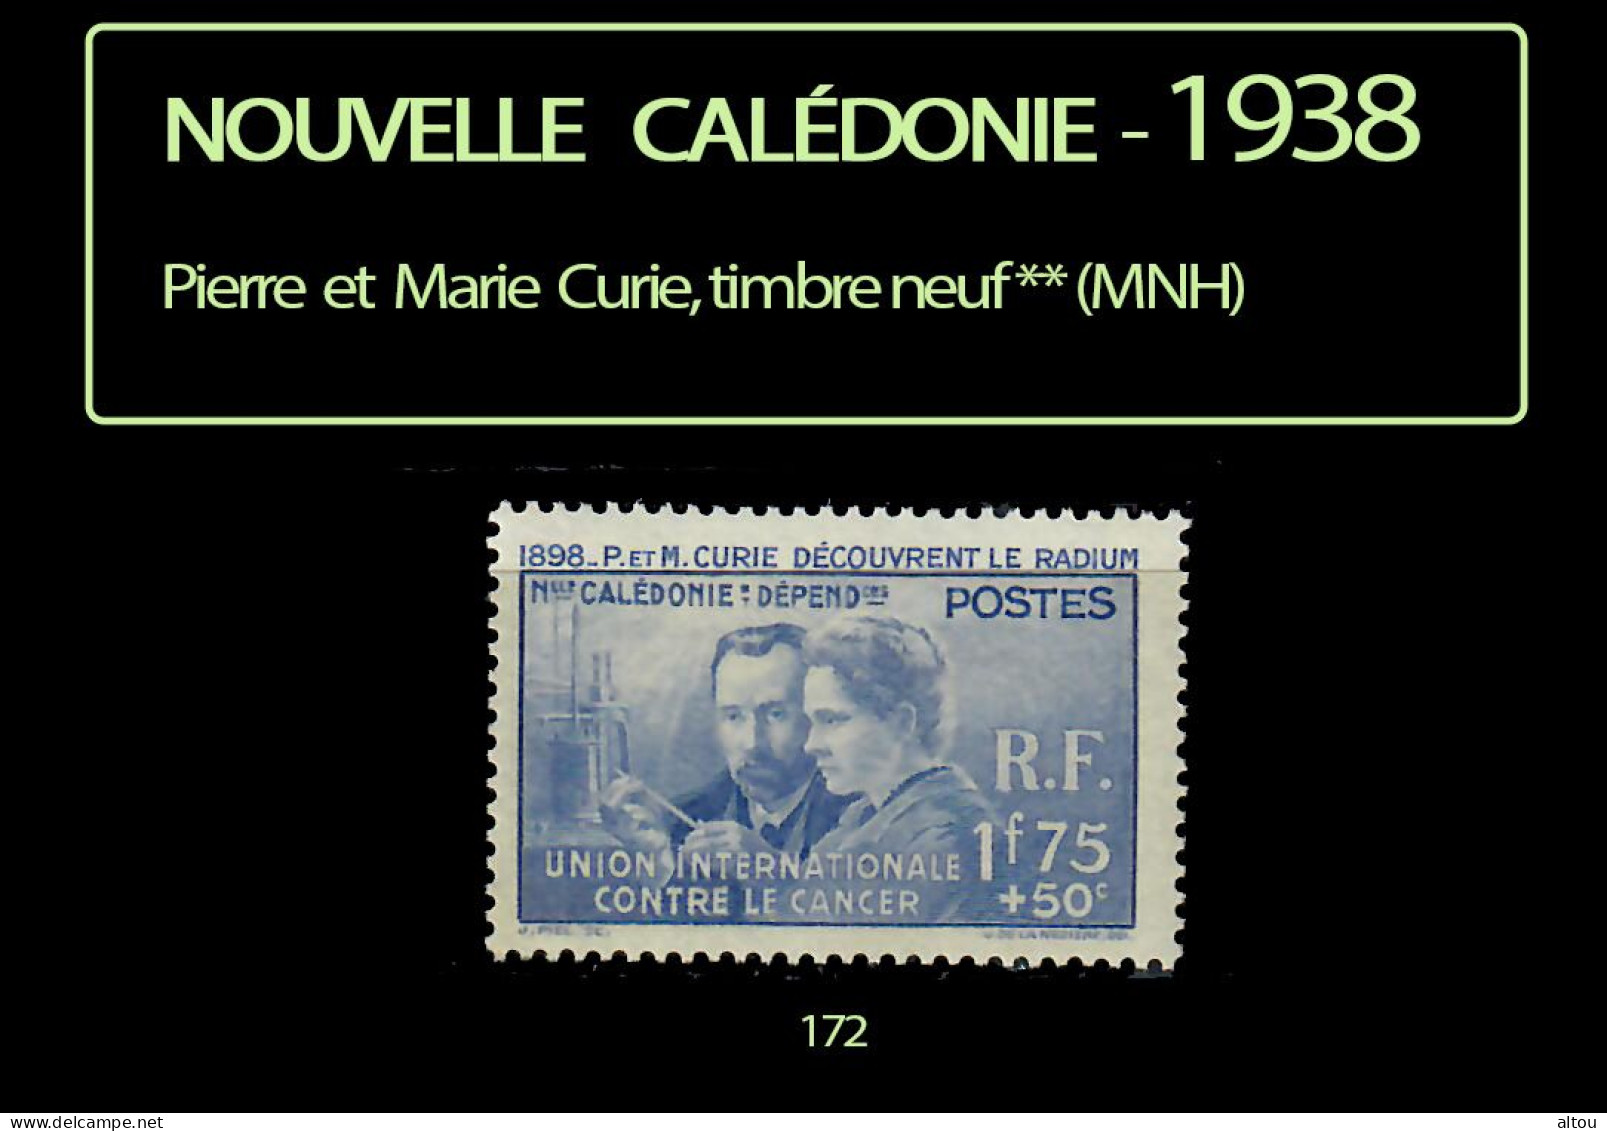 Nouvelle Calédonie 1938 - Pierre Et Marie Curie - Timbre Neuf ** (MNH) - Neufs